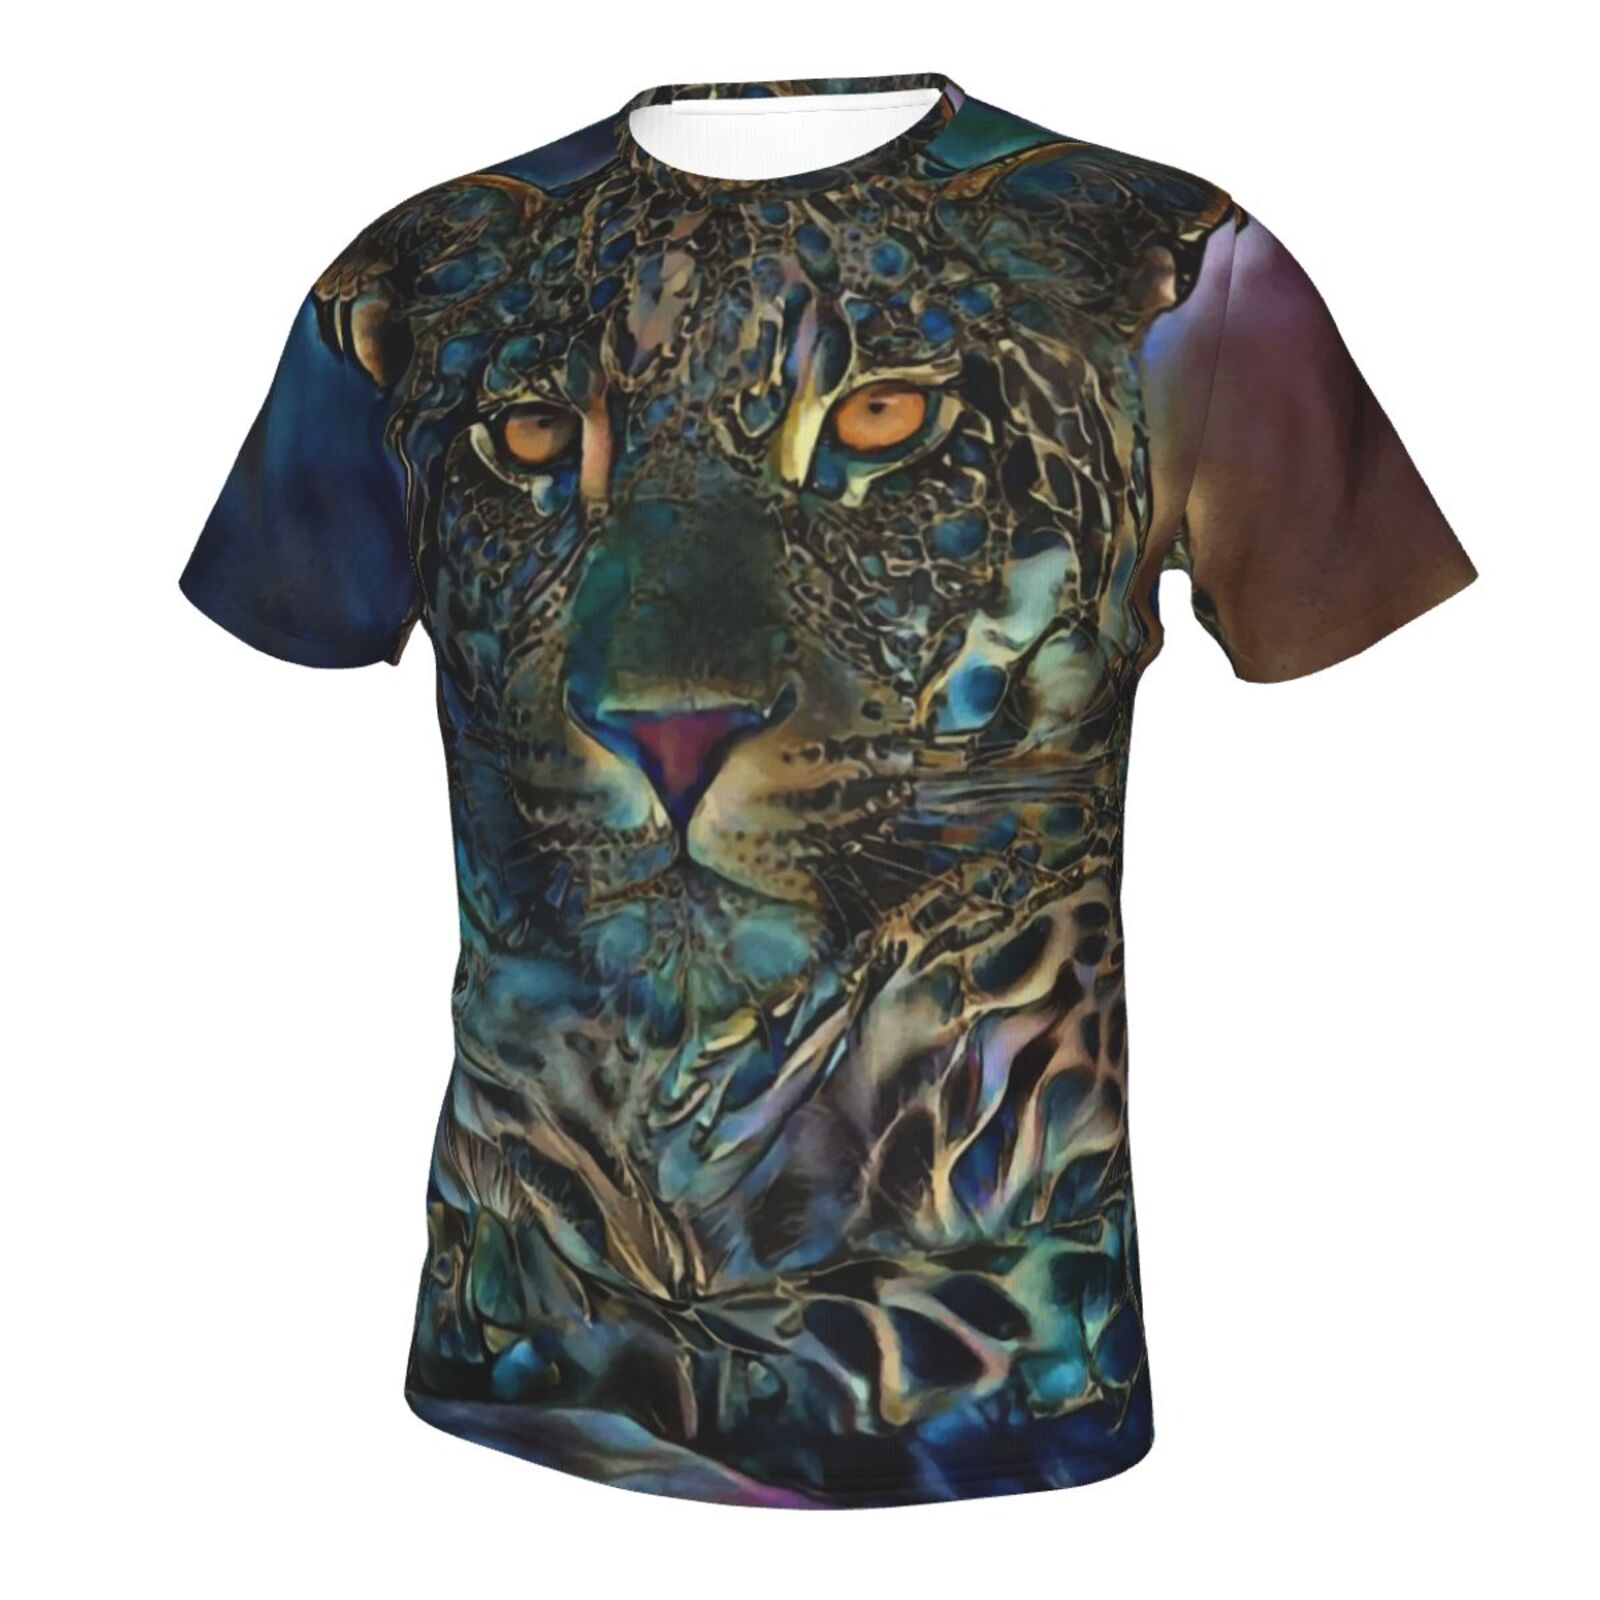 Laria Leopard Blandet Medieelementer Klassisk T-shirt